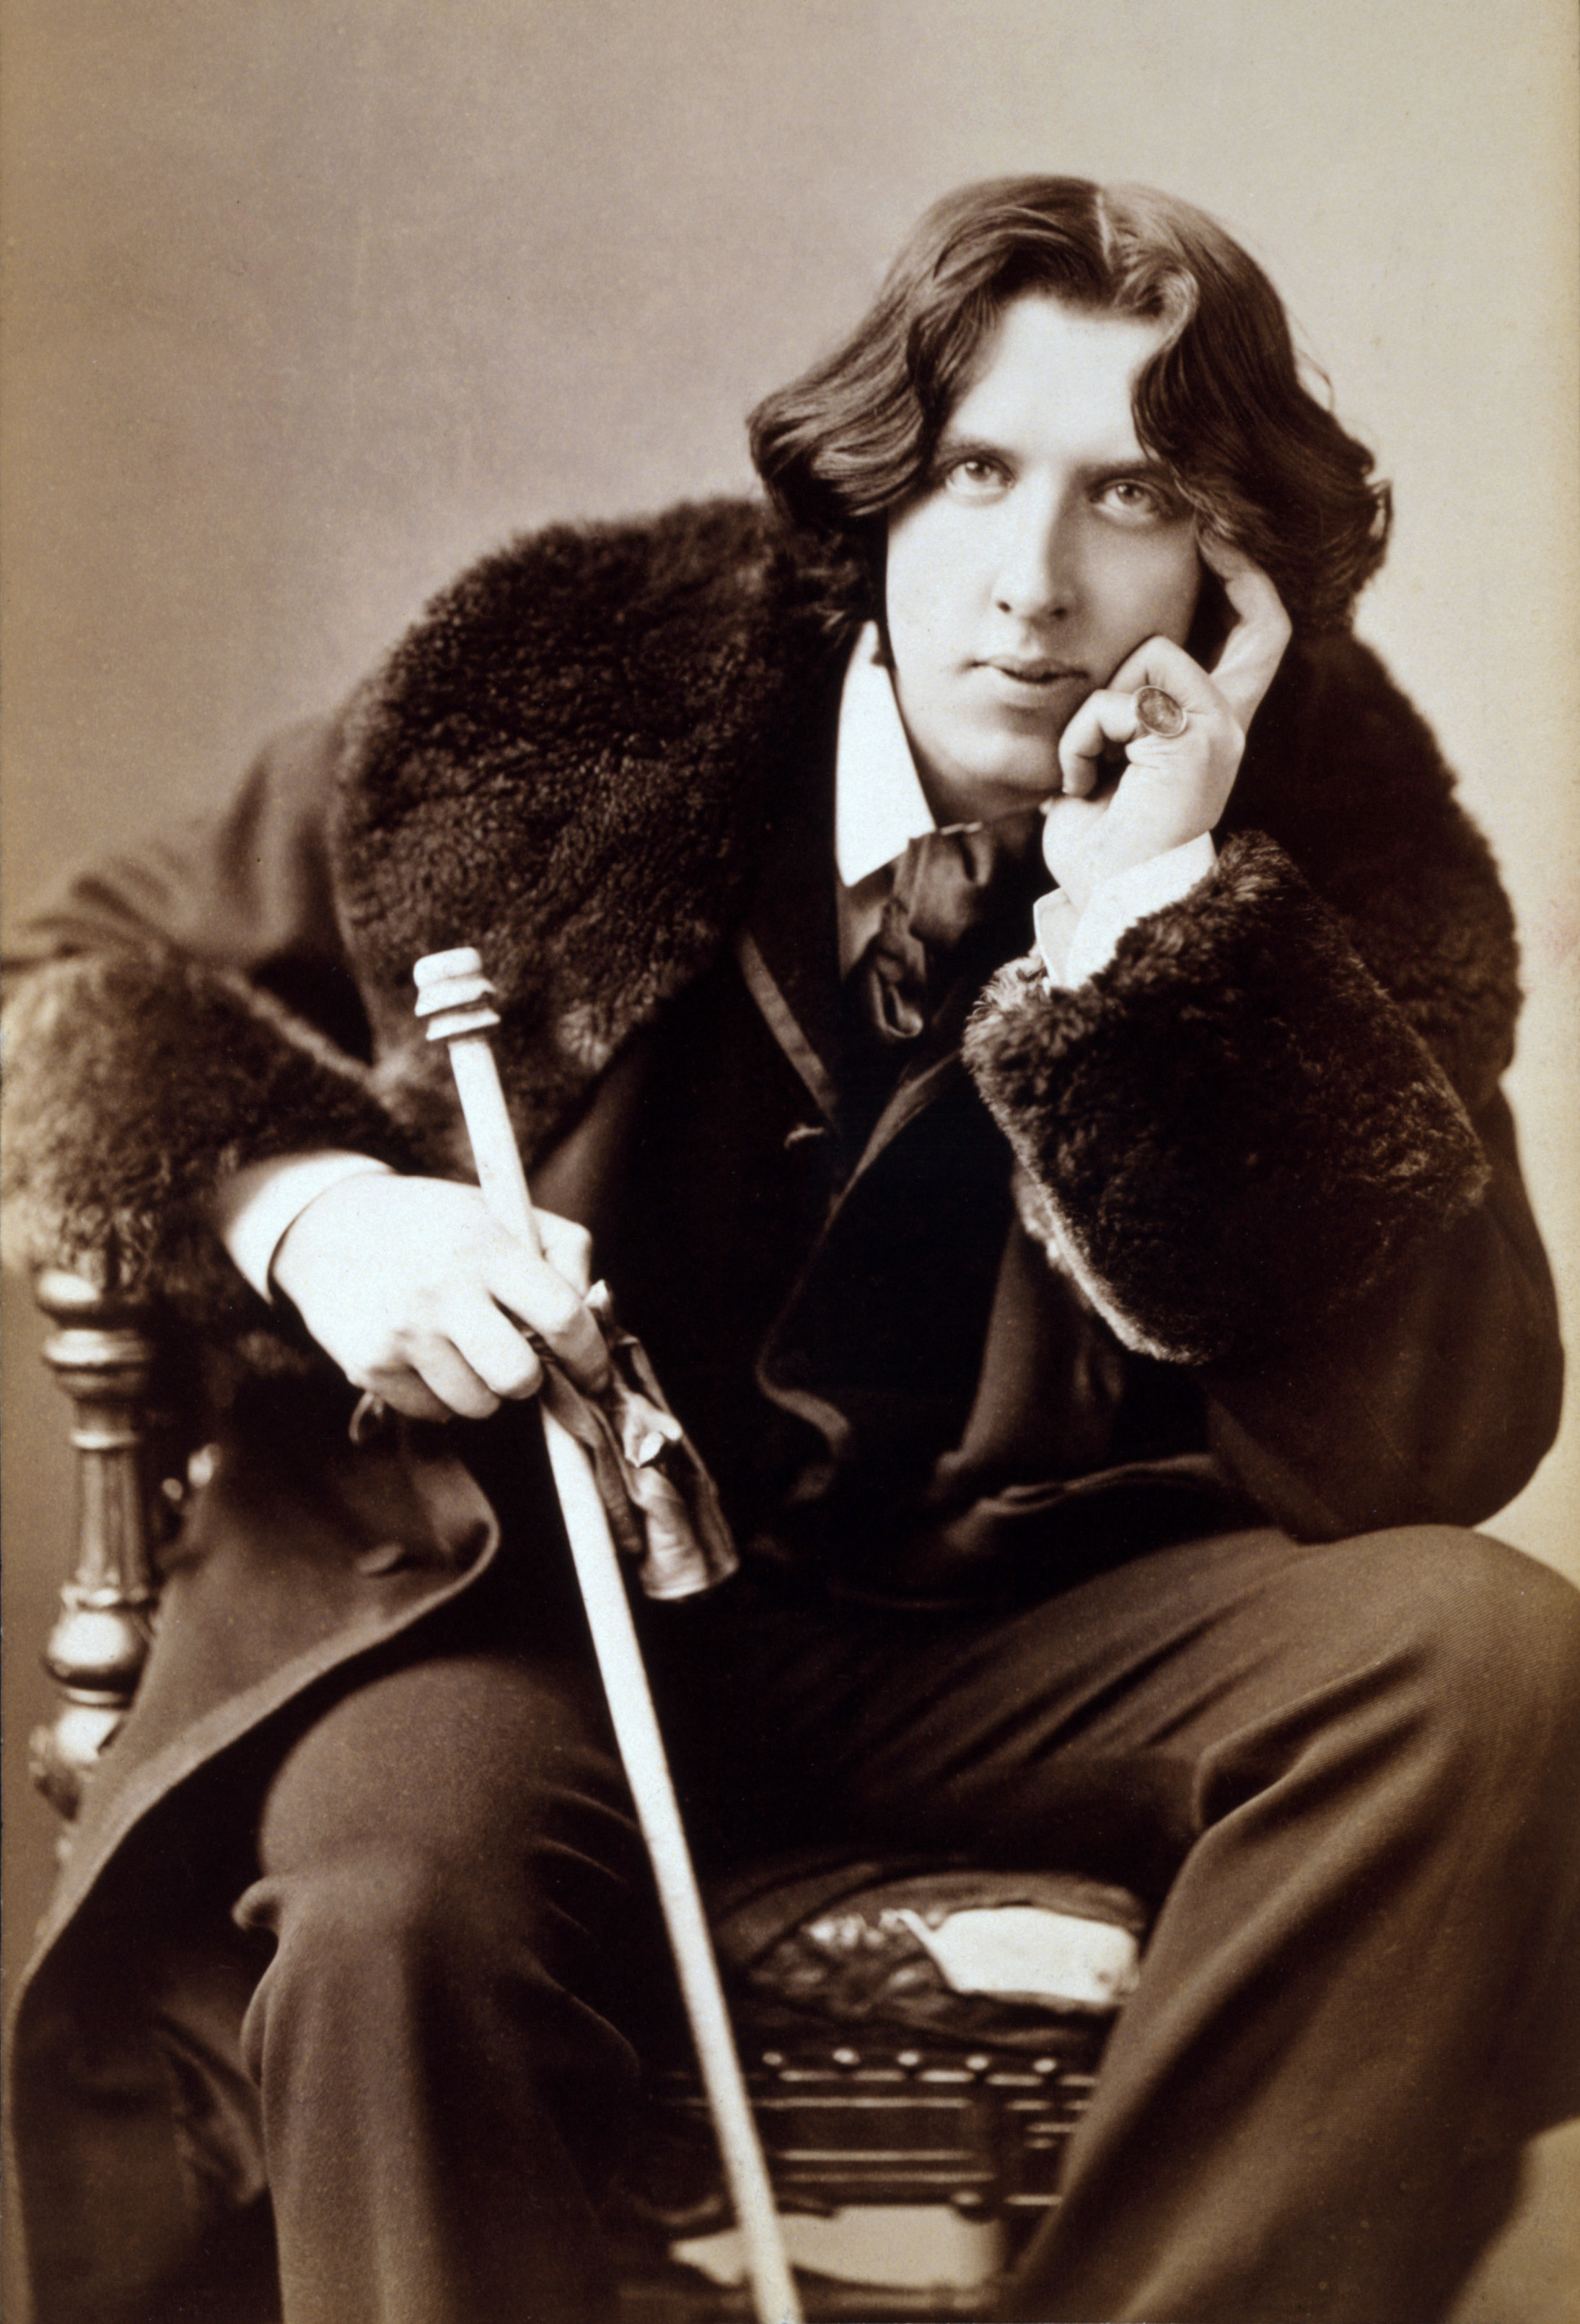 Wilde in 1882